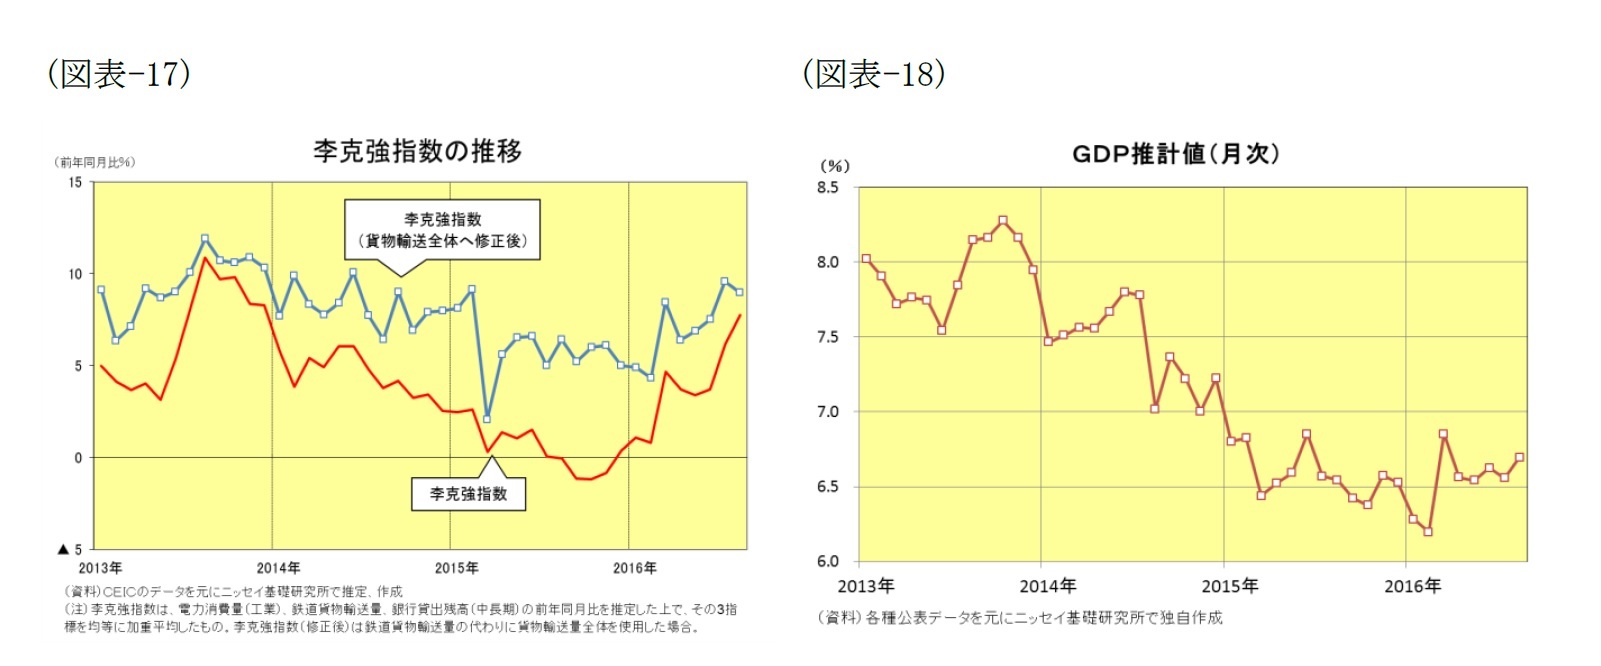 （図表-17）李克強指数の推移/（図表-18）GDP推計値(月次)